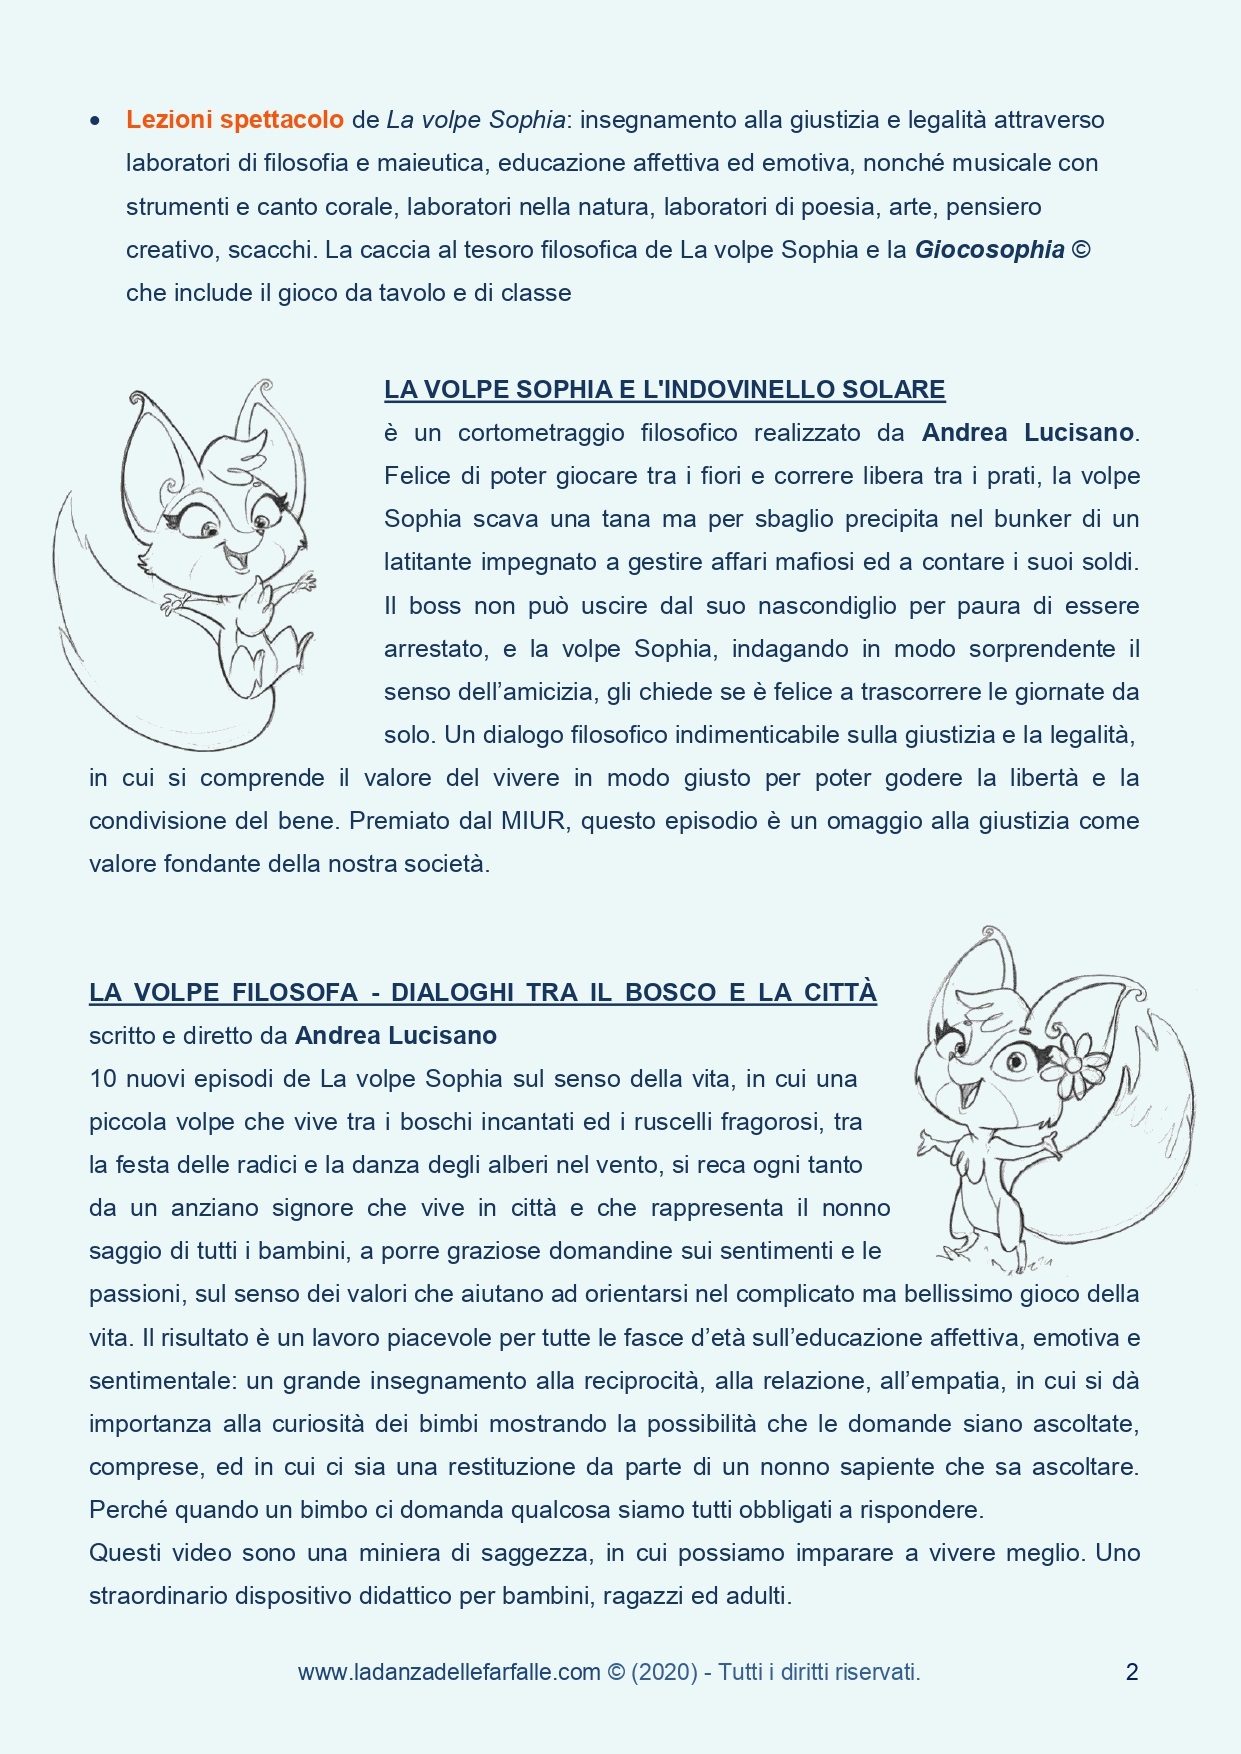 La volpe Sophia di Andrea Lucisano si presenta 2020 pagina 2 sito